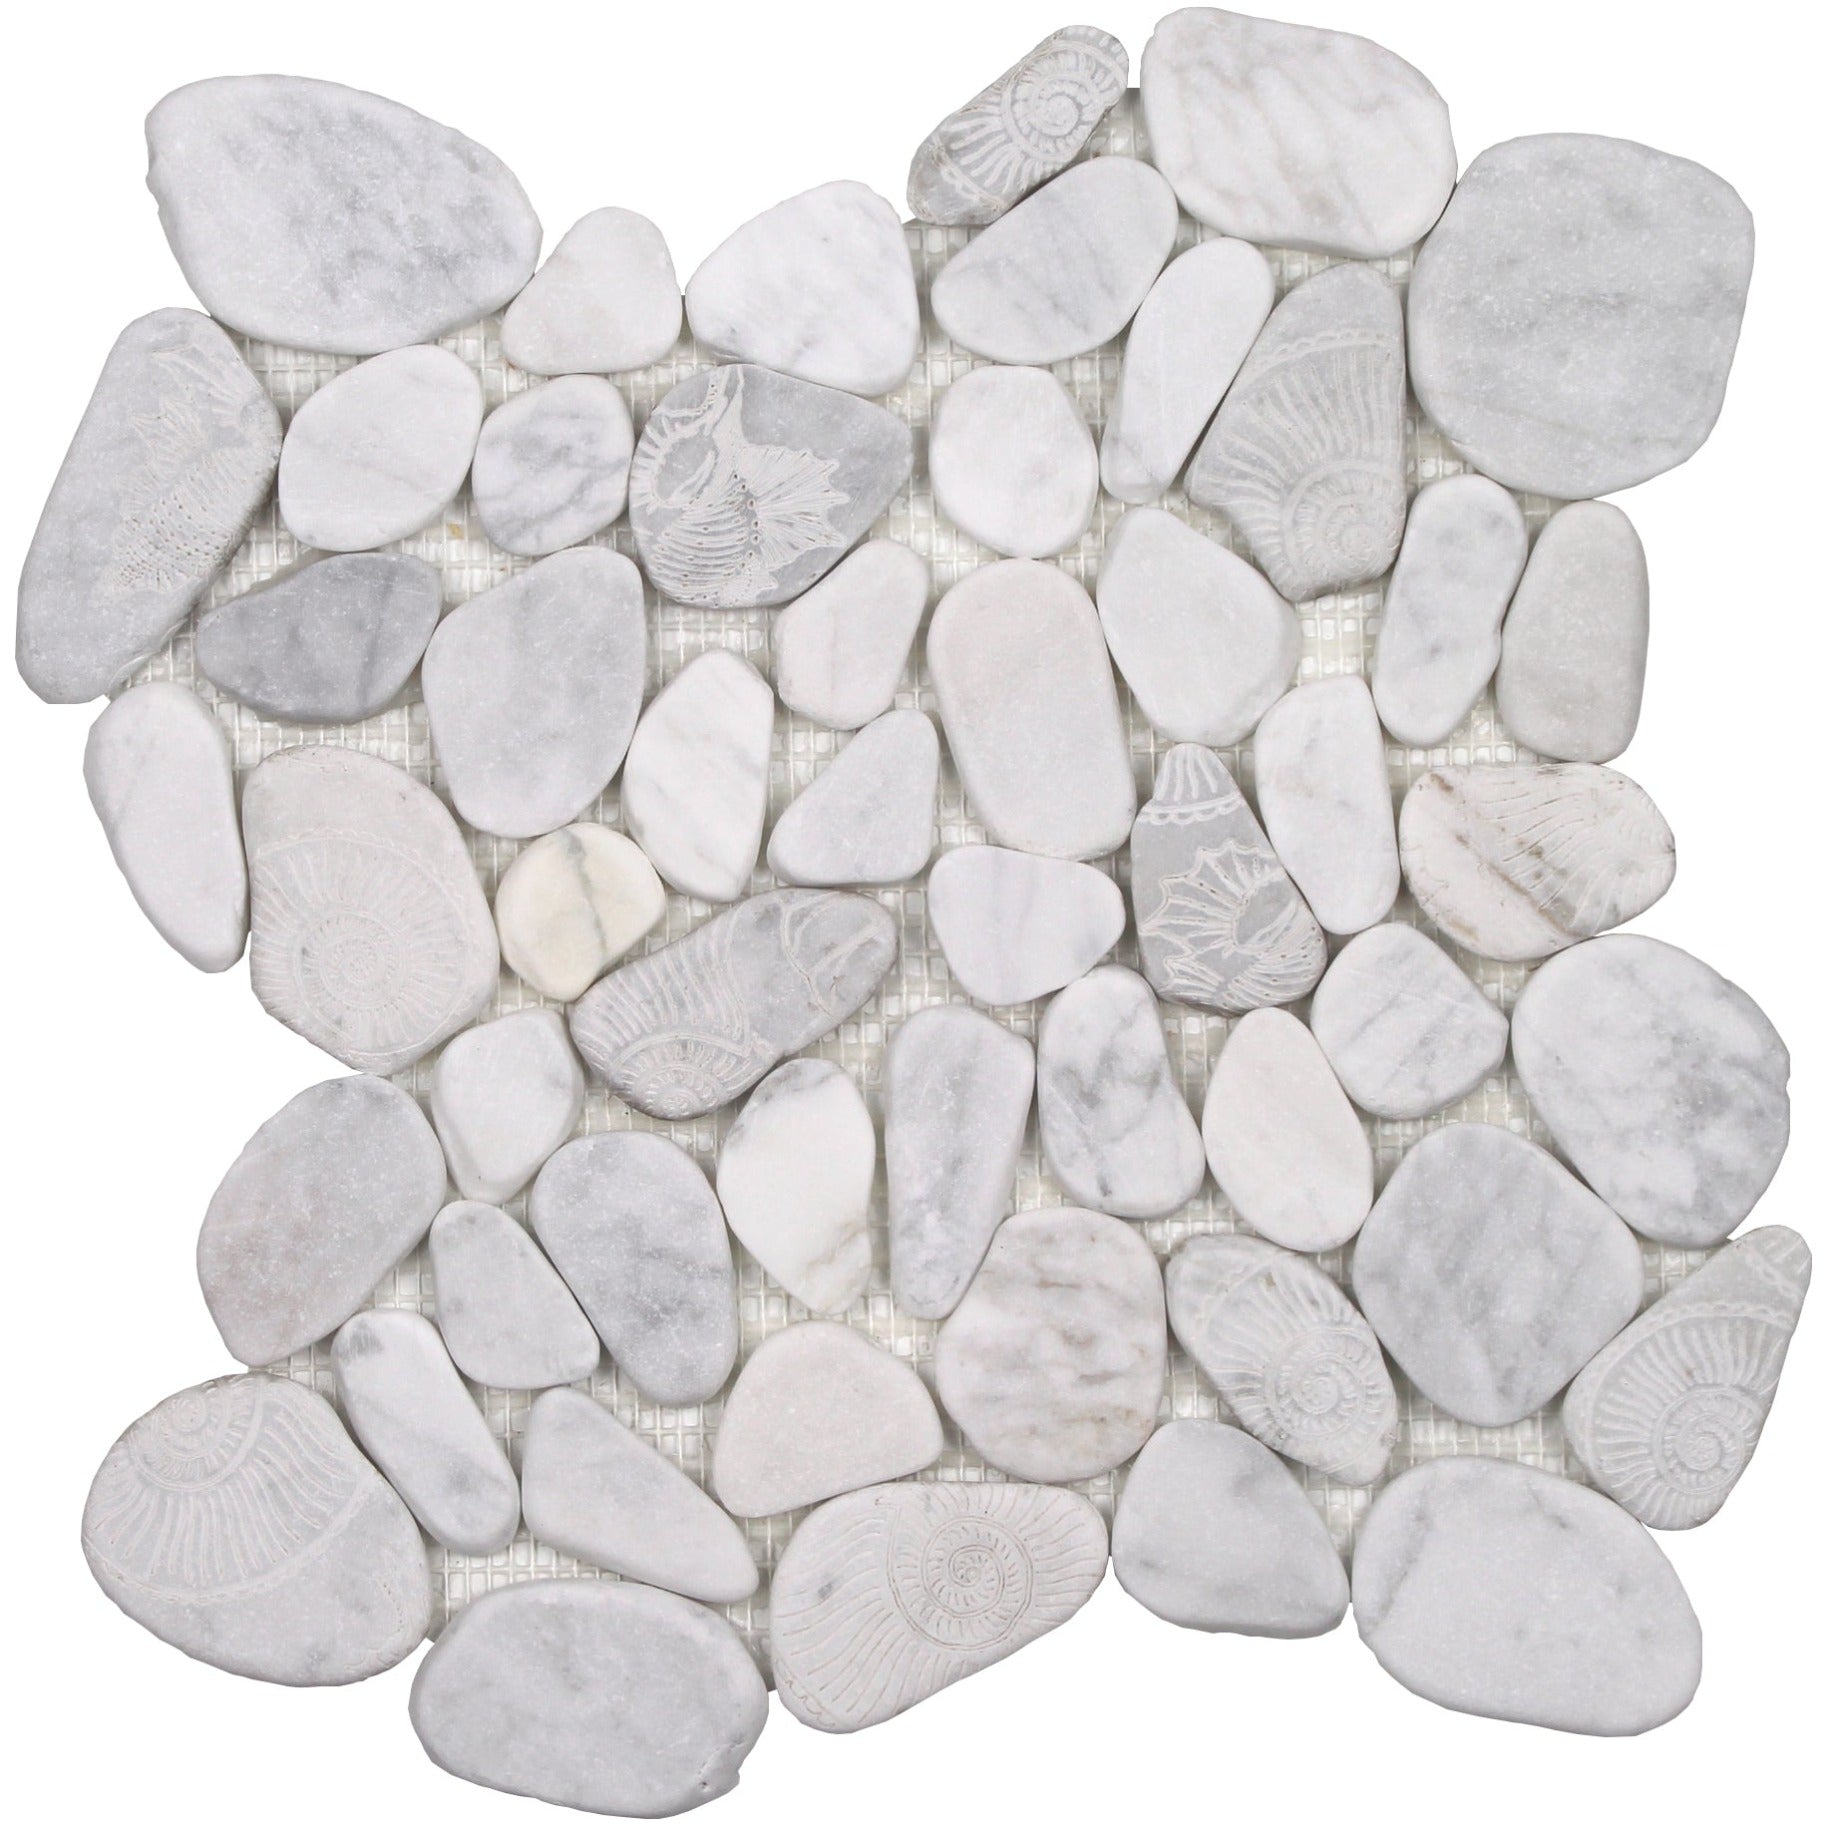 Tesoro - Ocean Stones Collection - Sliced Pebble Mosaic - Fossil Carrara